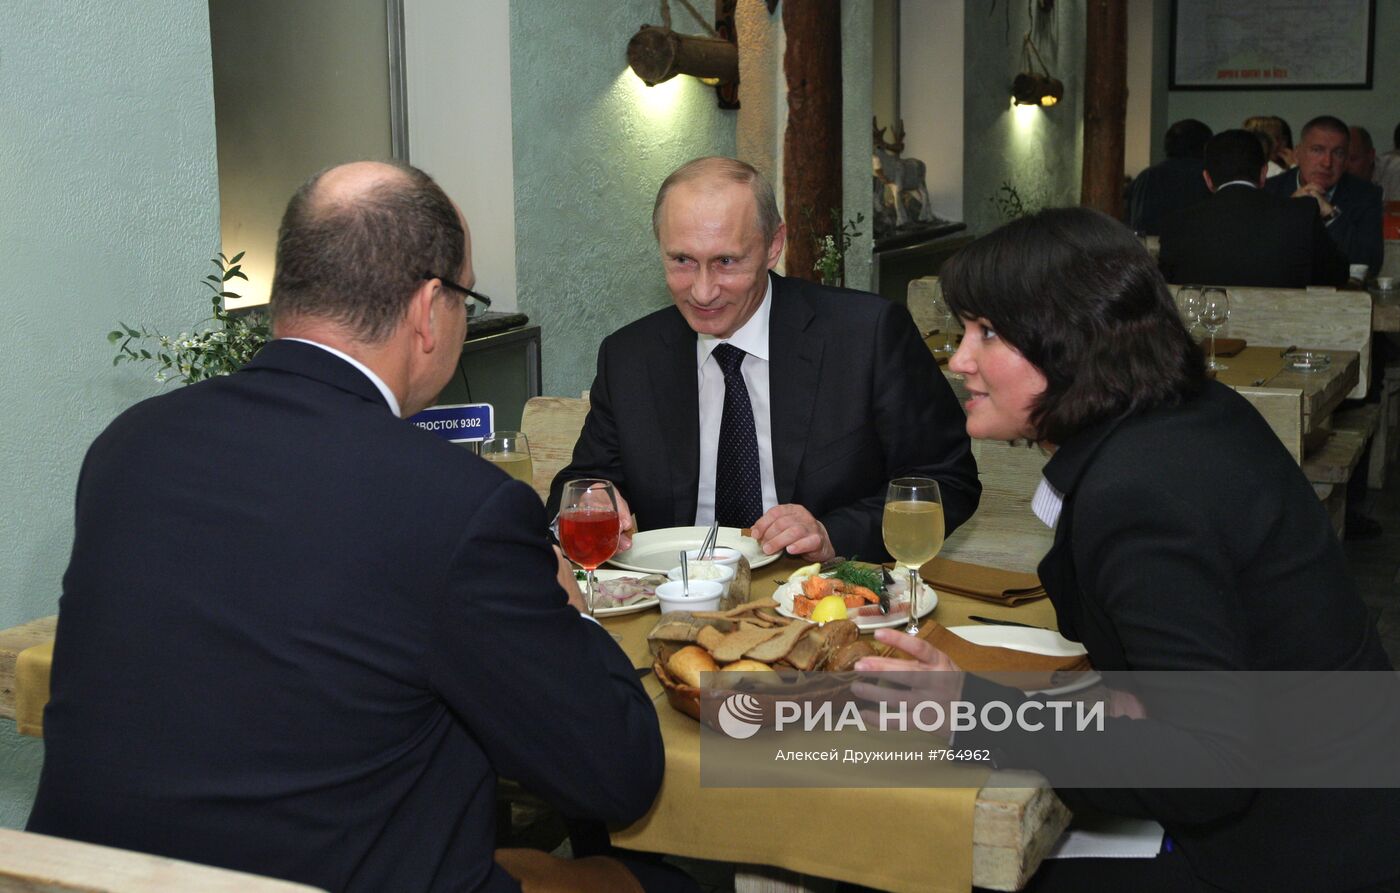 В.Путин и принц Альбер